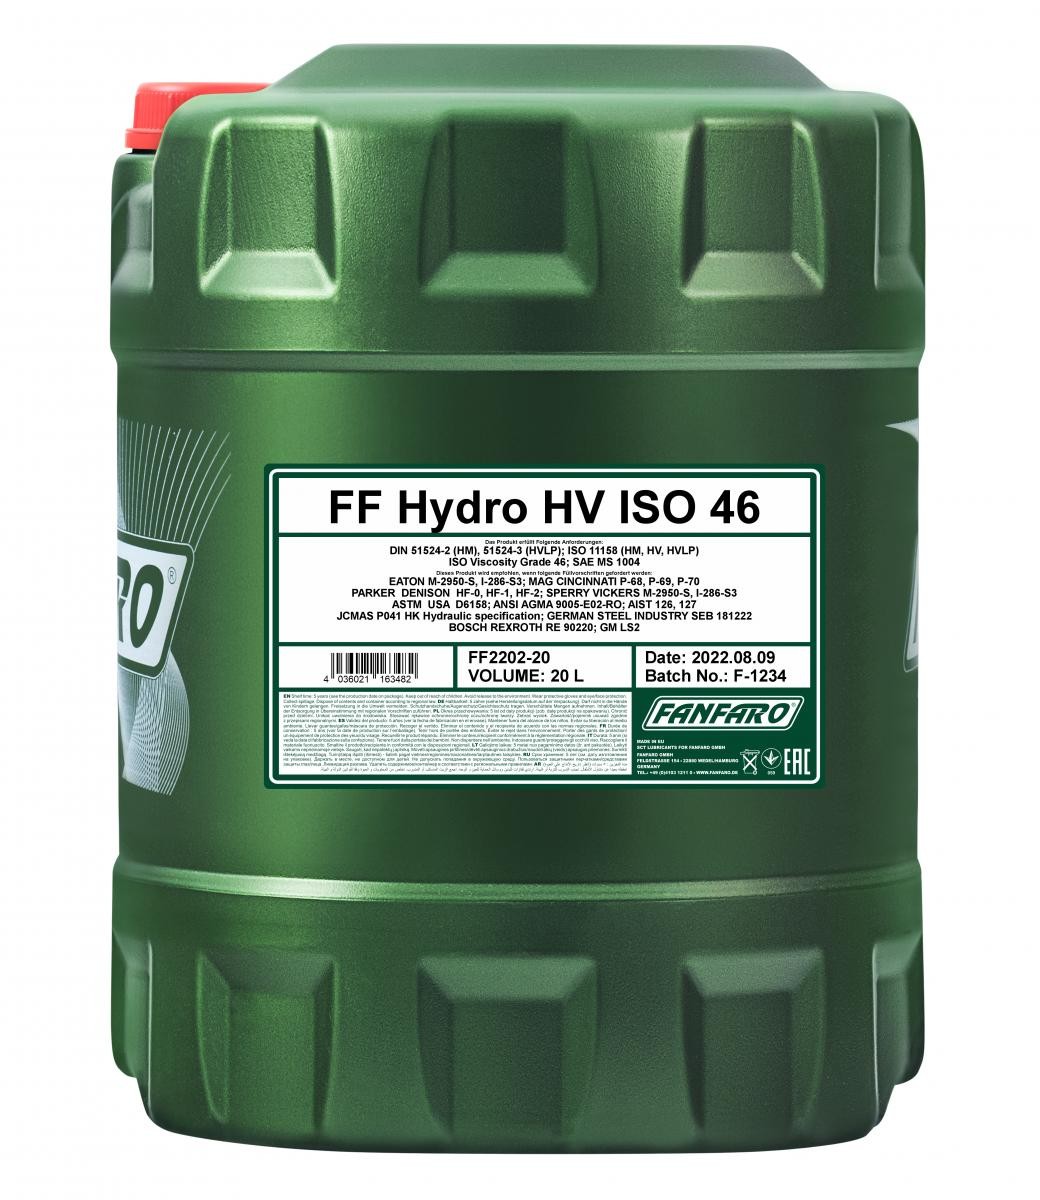 Buy FANFARO Hydraulic Oil FF2202-20 truck